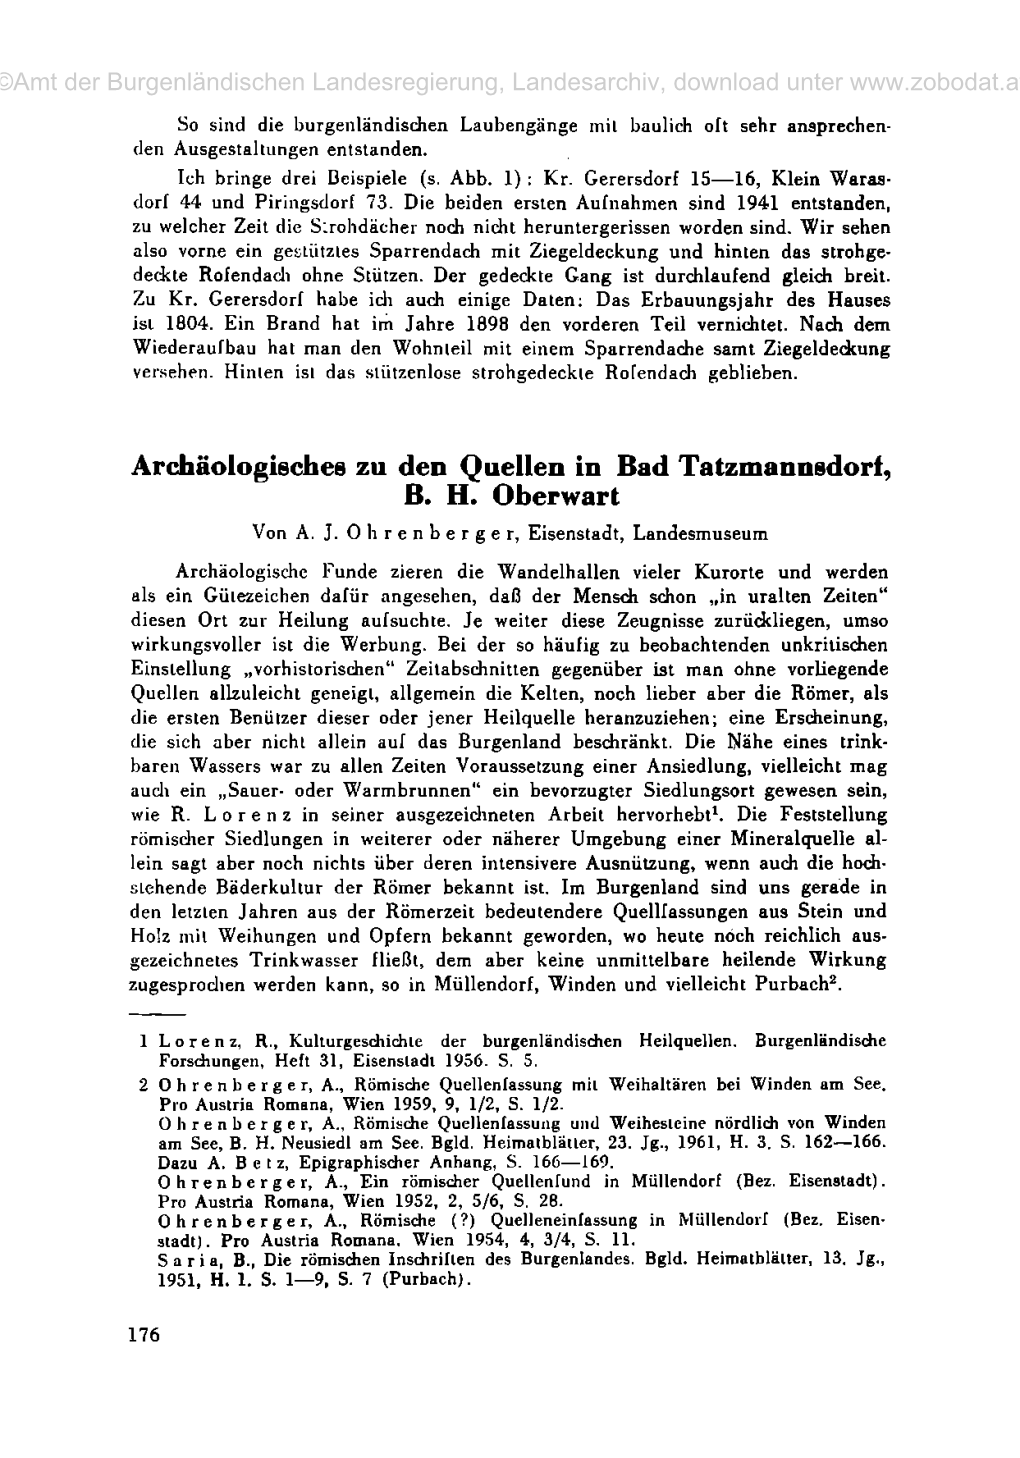 Archäologisches Zu Den Quellen in Bad Tatzmannsdorf, B. H. Oberwart Von A